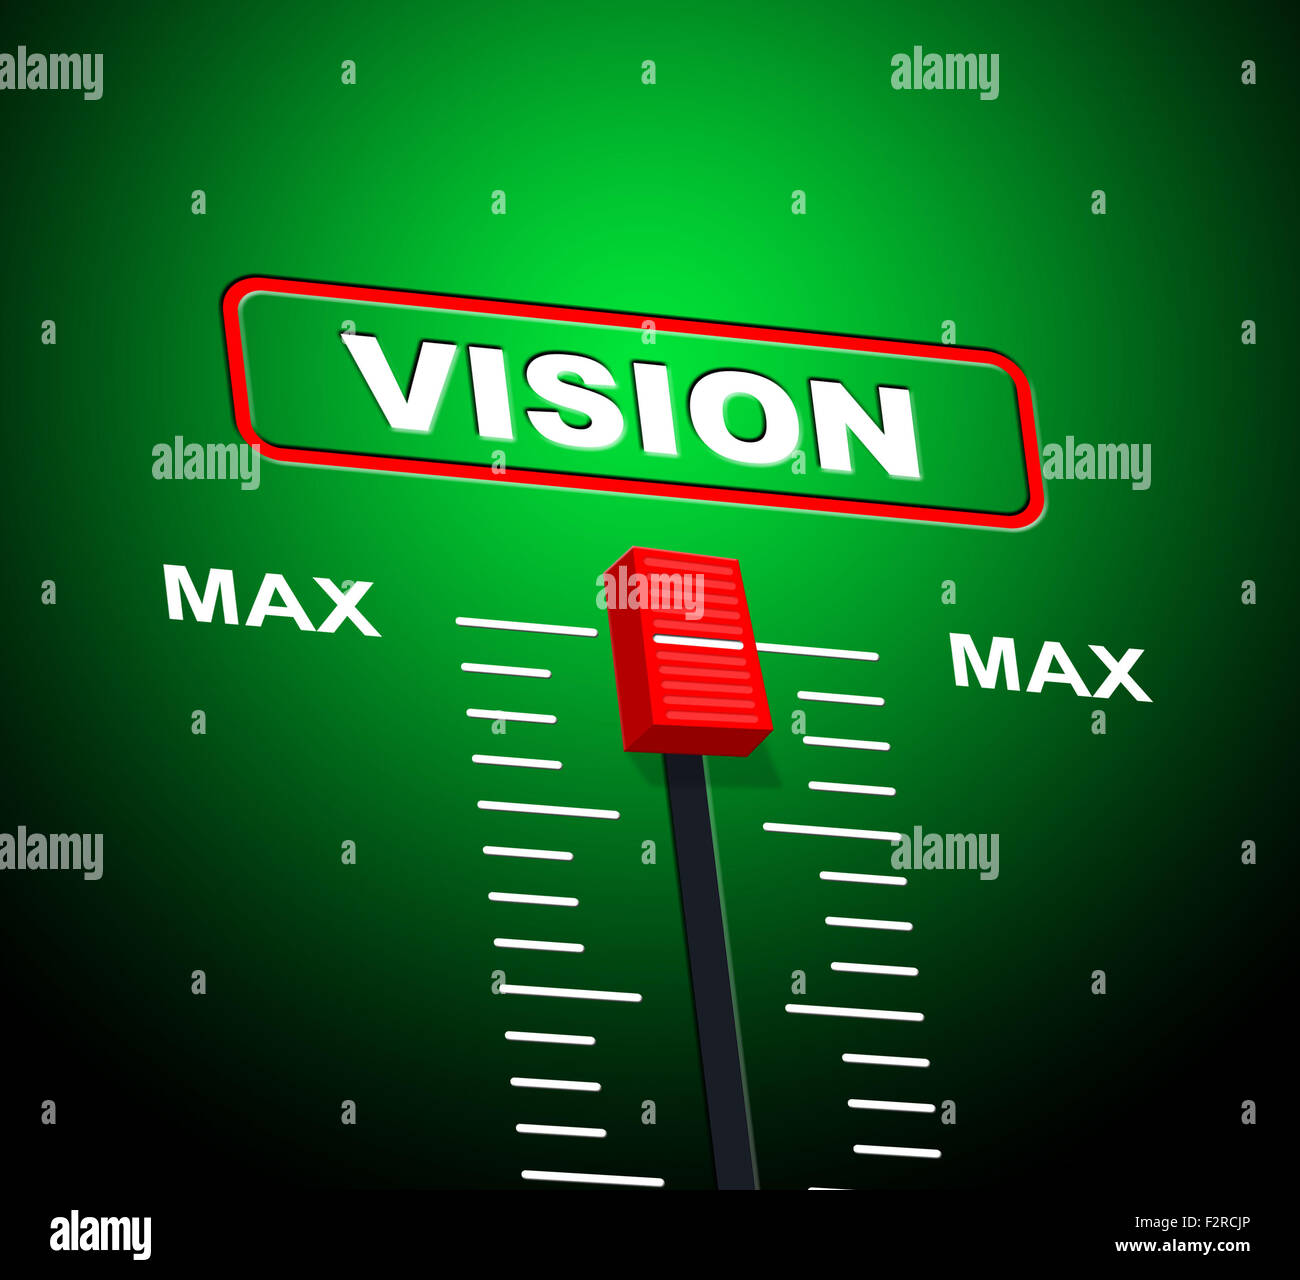 Max Vision indiquant la limite supérieure et but Banque D'Images